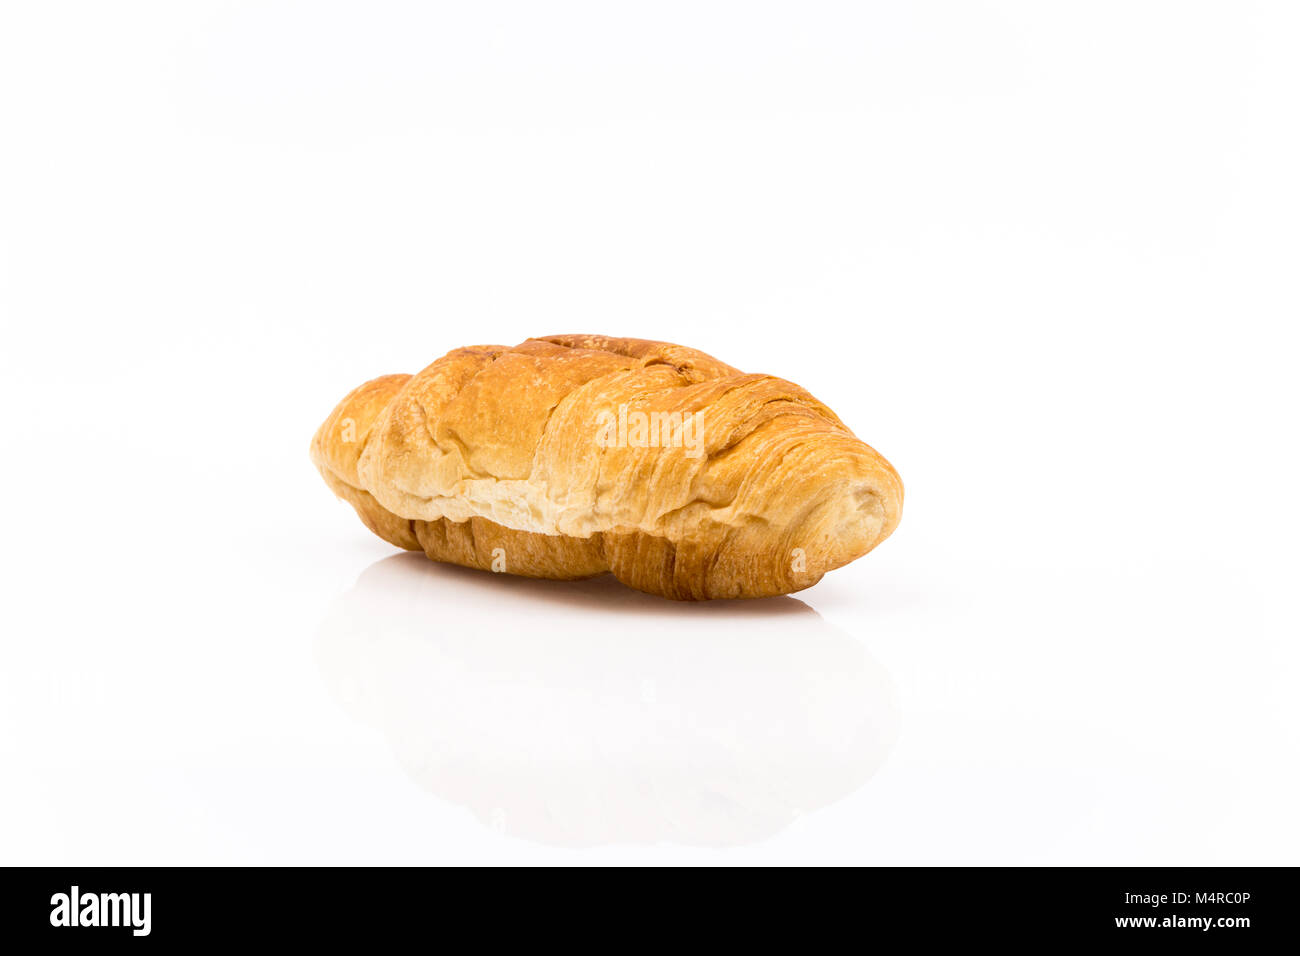 Tradizionale Francese breakfest croissant al cioccolato isolato su sfondo bianco Foto Stock